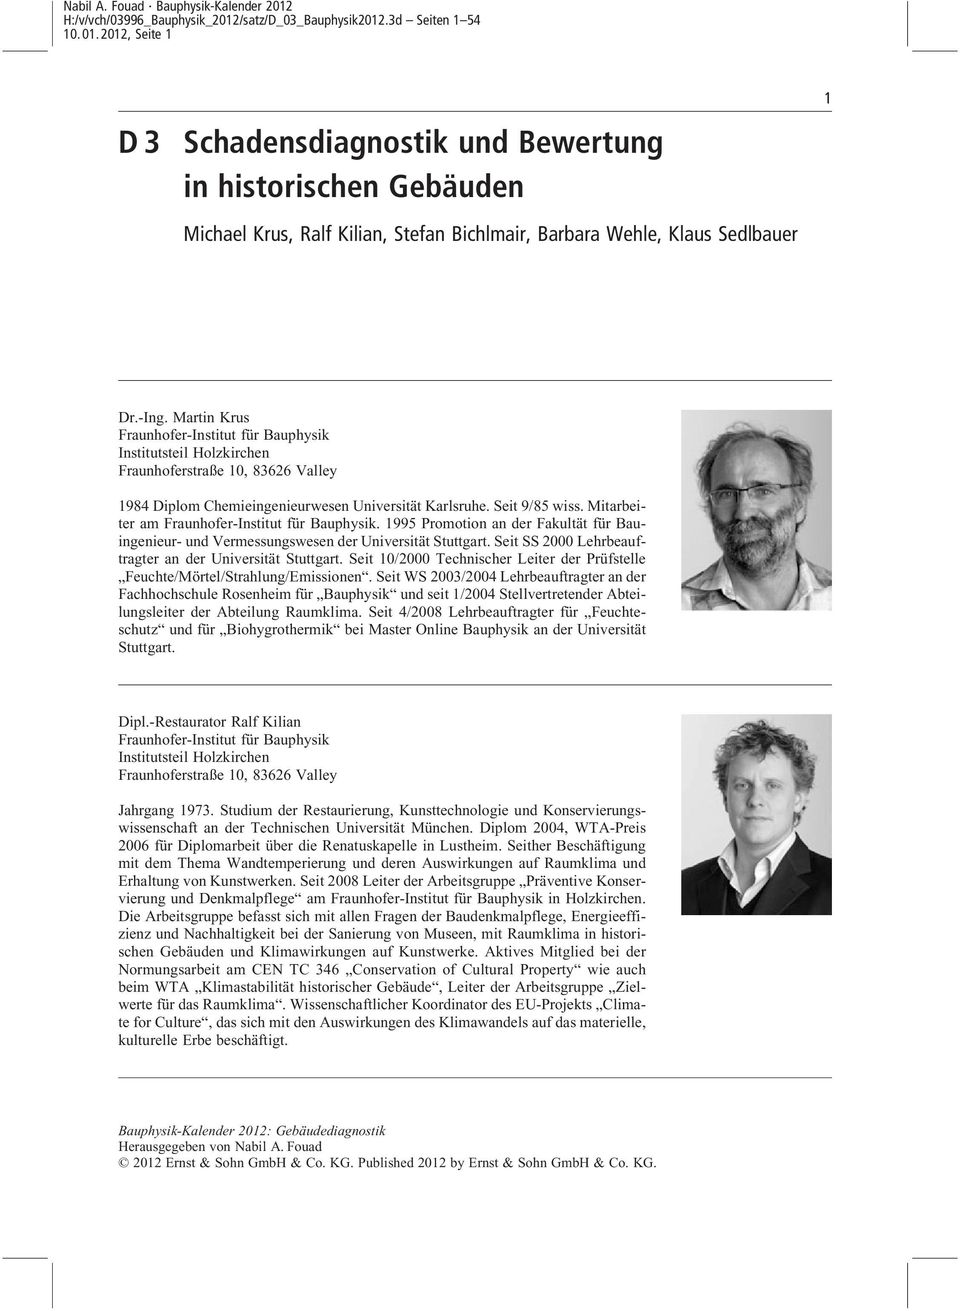 Mitarbeiter am Fraunhofer-Institut für Bauphysik. 1995 Promotion an der Fakultät für Bauingenieur- und Vermessungswesen der Universität Stuttgart.